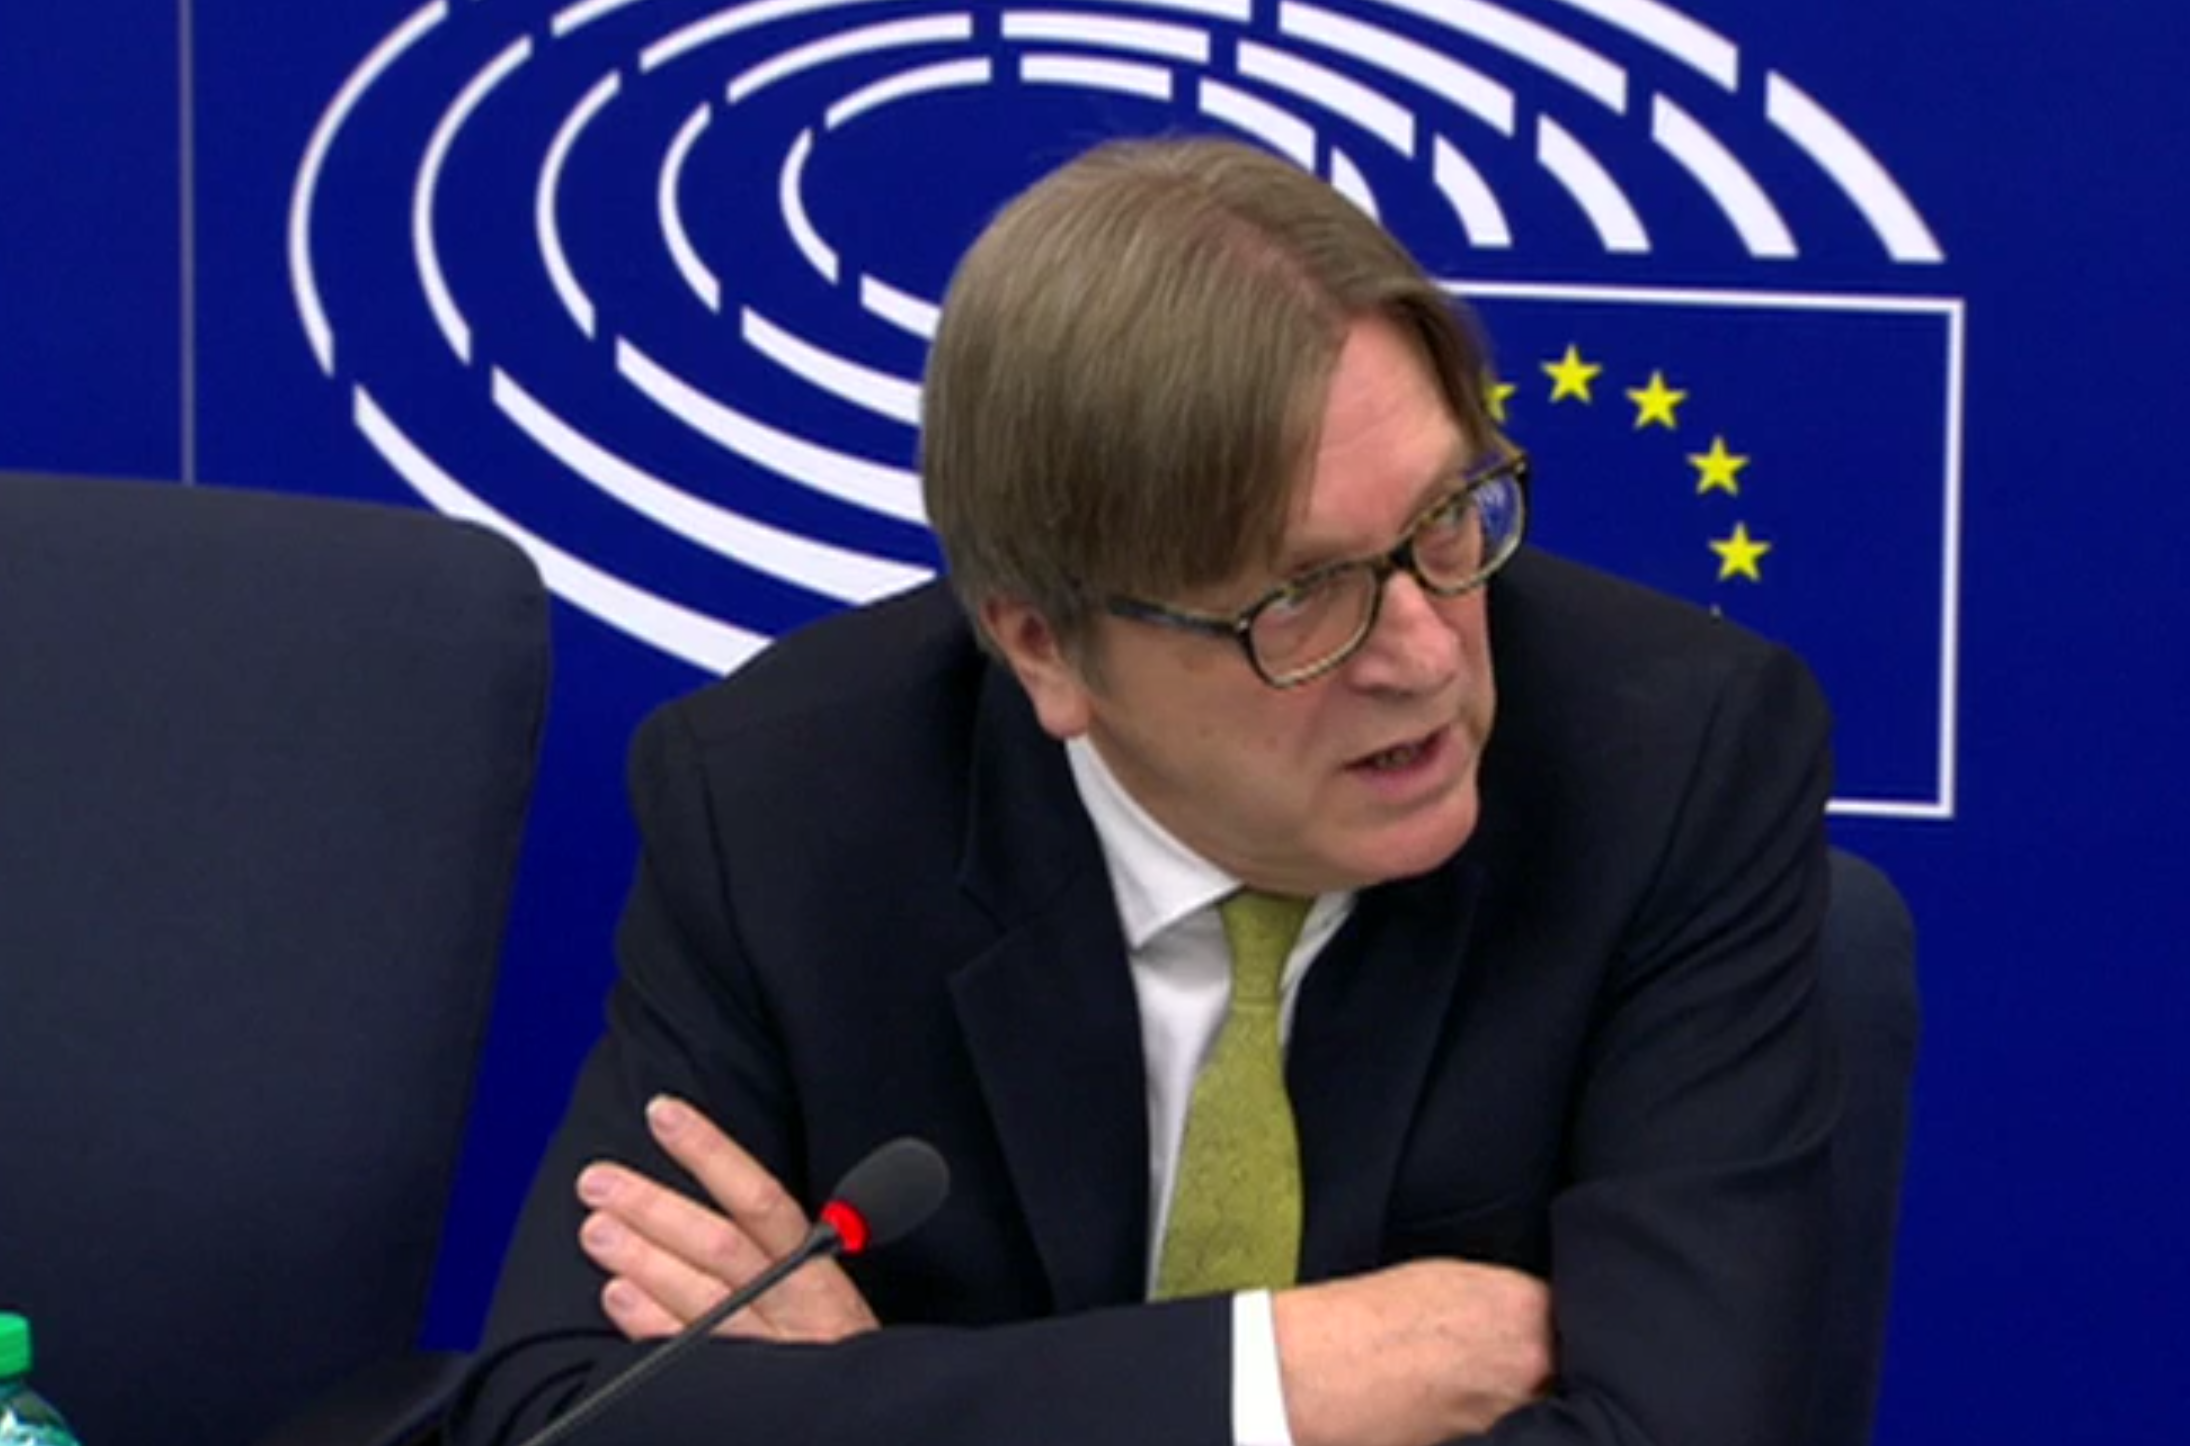 Guy Verhofstadt welcomed the talks